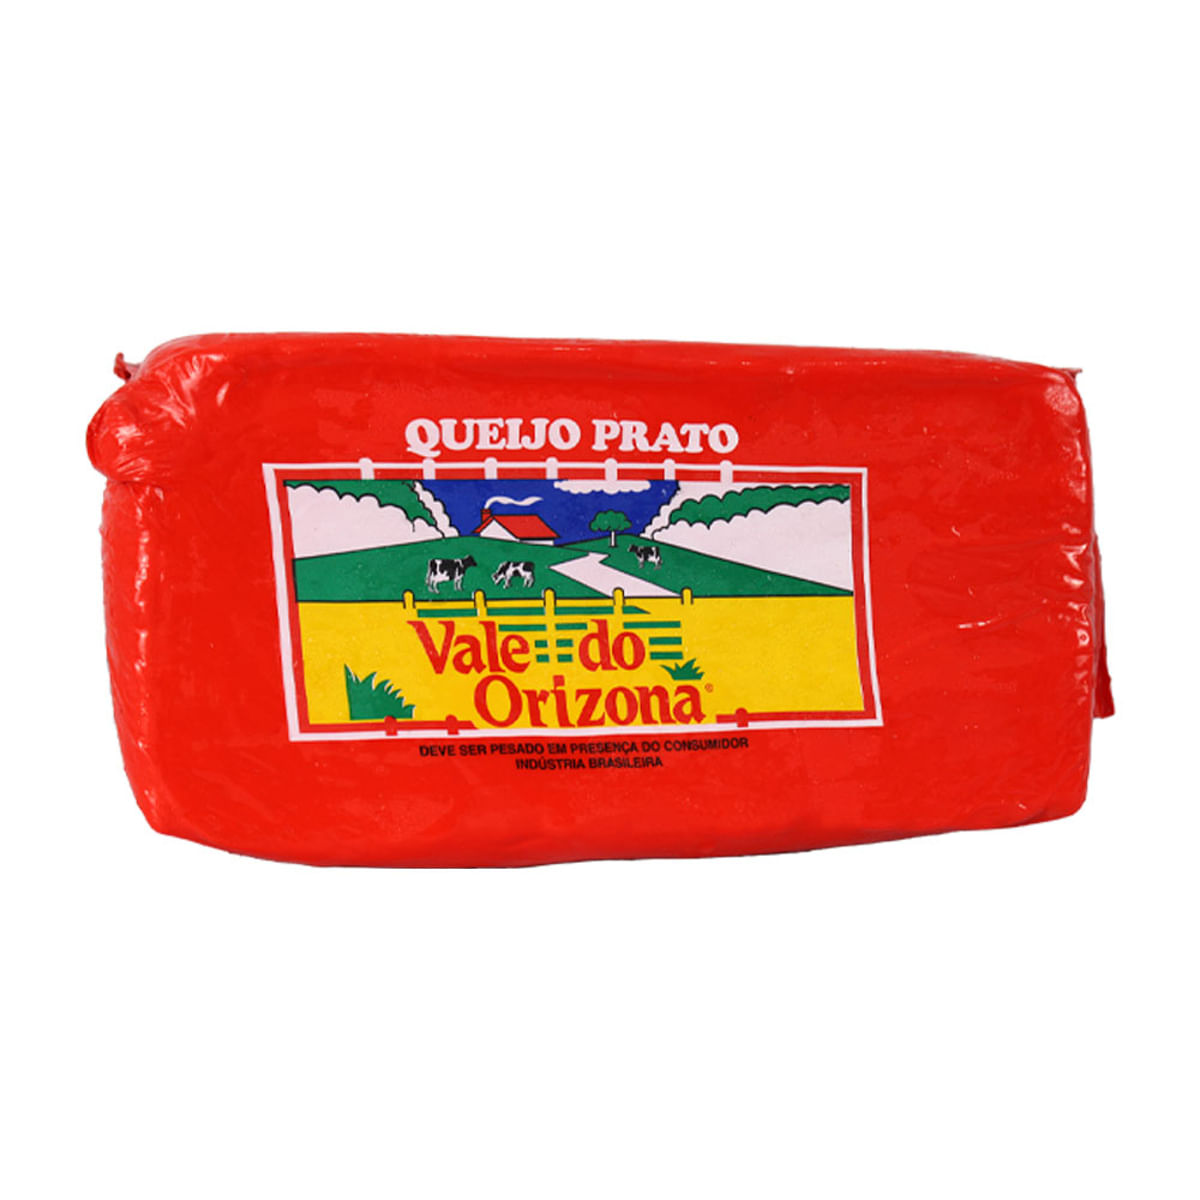 queijo-prato-vale-do-orizona-kg-1.jpg